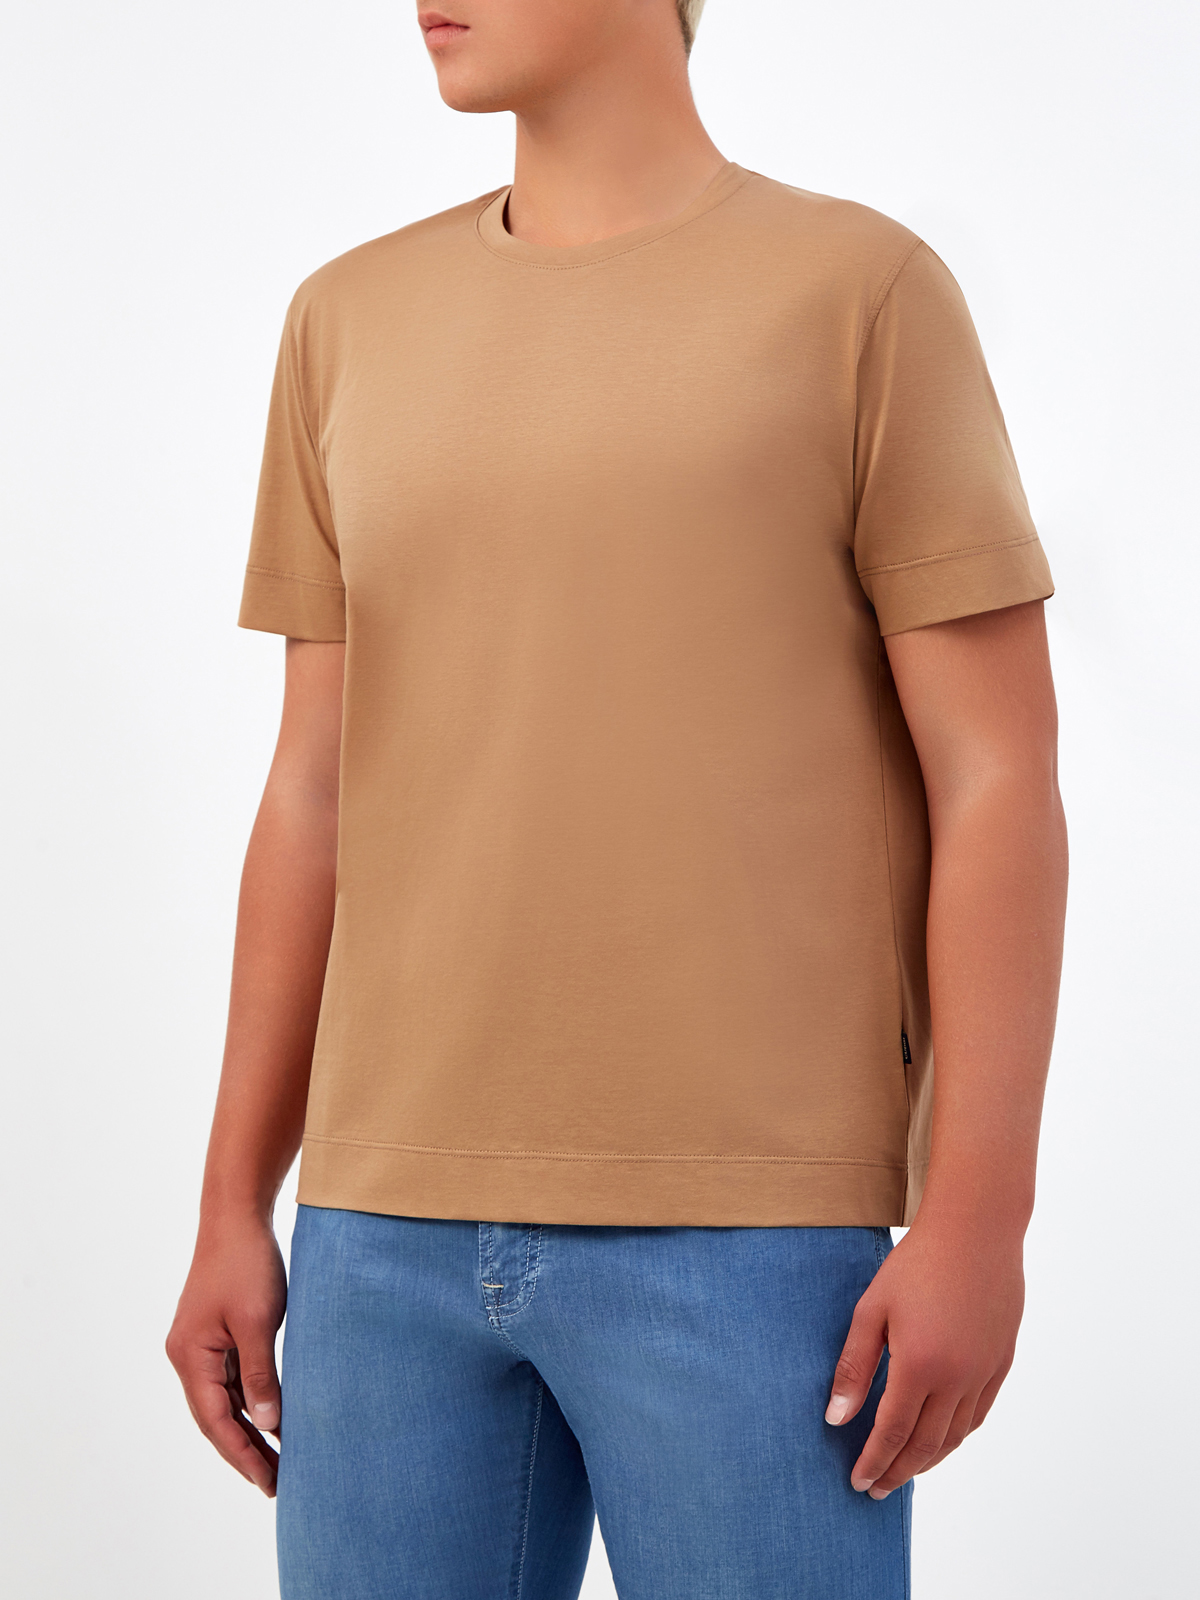 Хлопковая футболка с нашивкой и двойной прострочкой CUDGI, цвет коричневый, размер 50;52;54;56;48 - фото 3